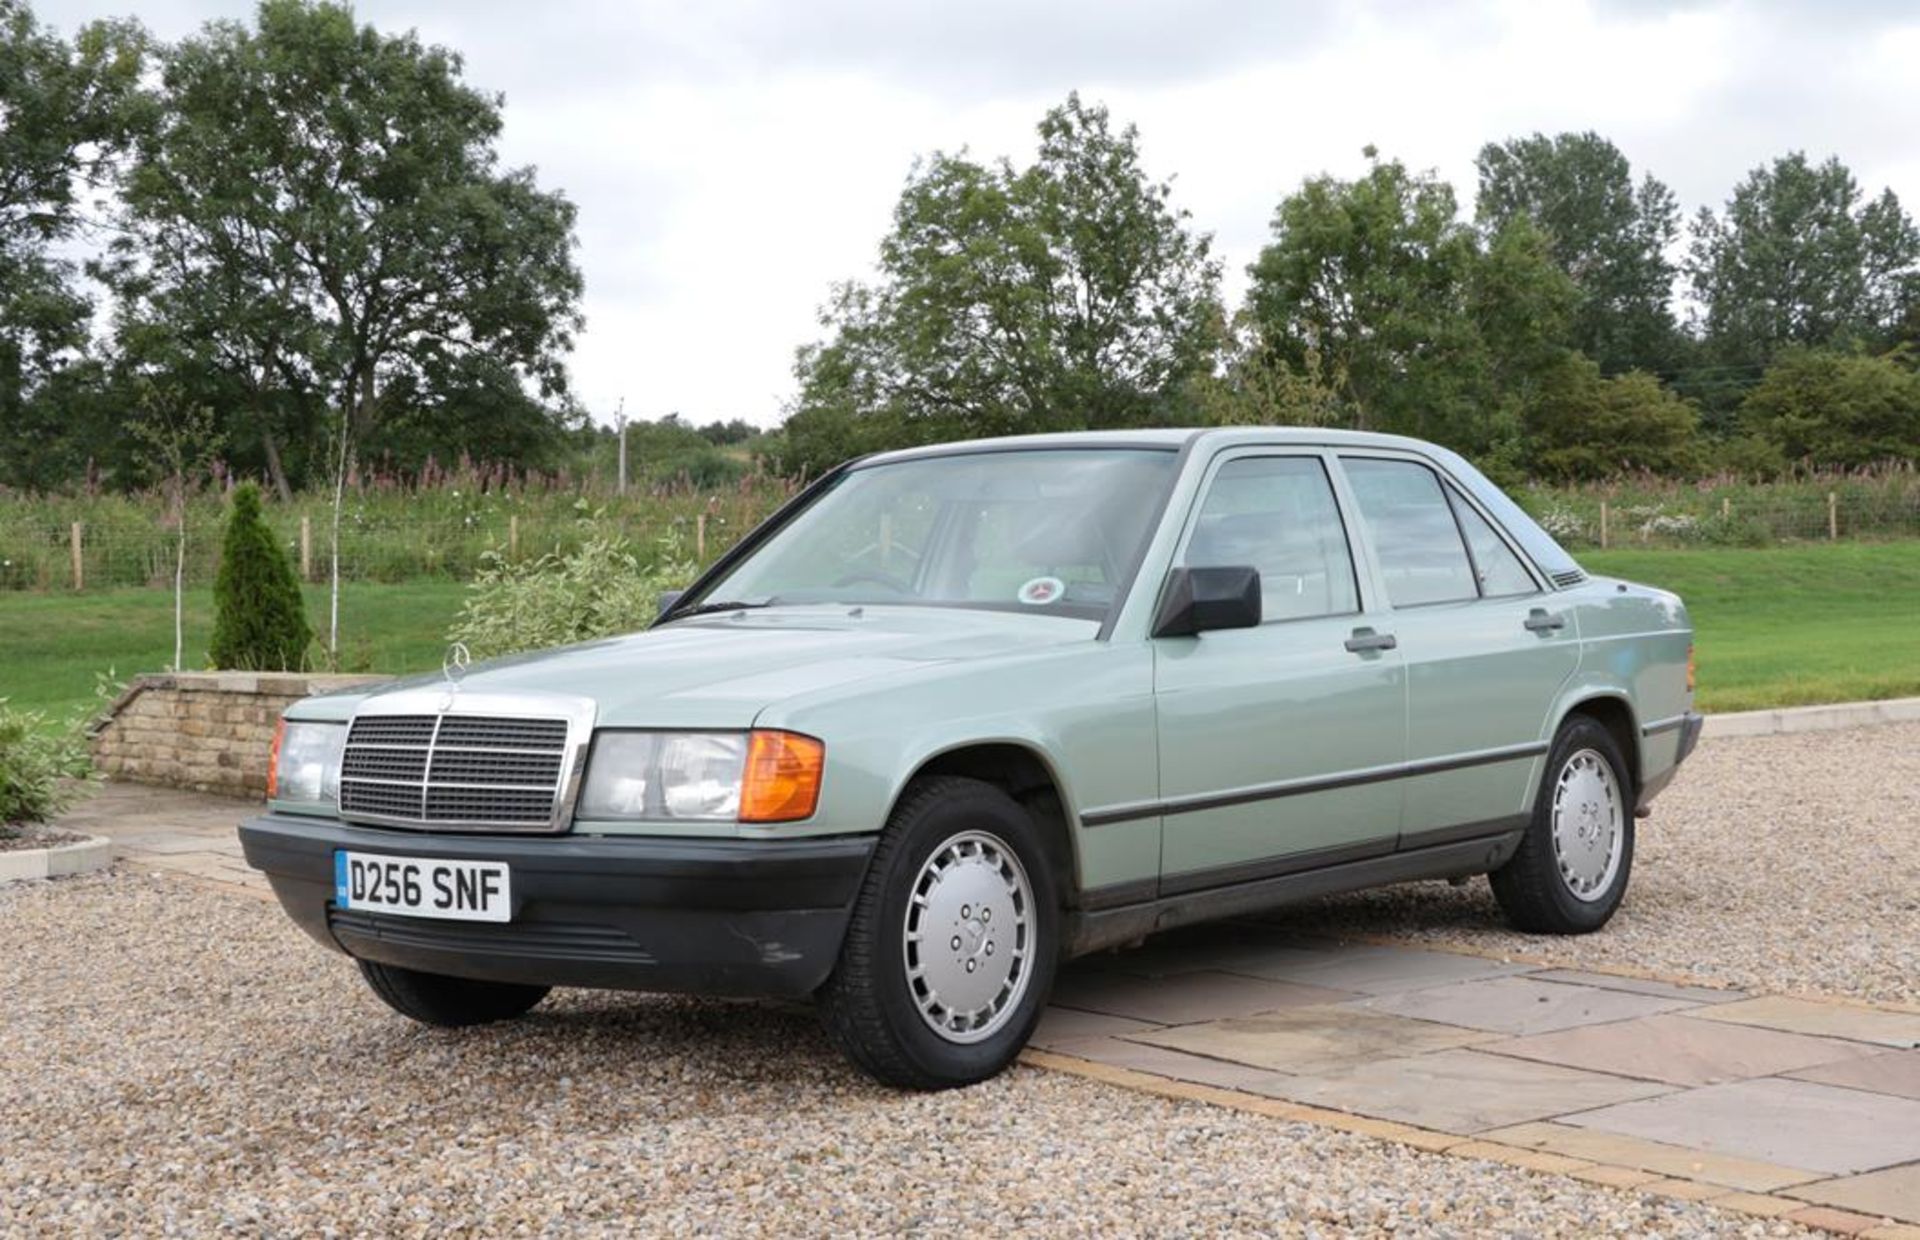 Mercedes 190 E Registration number: D256 SNF Date of first registration: 01/02/1987 VIN Number: